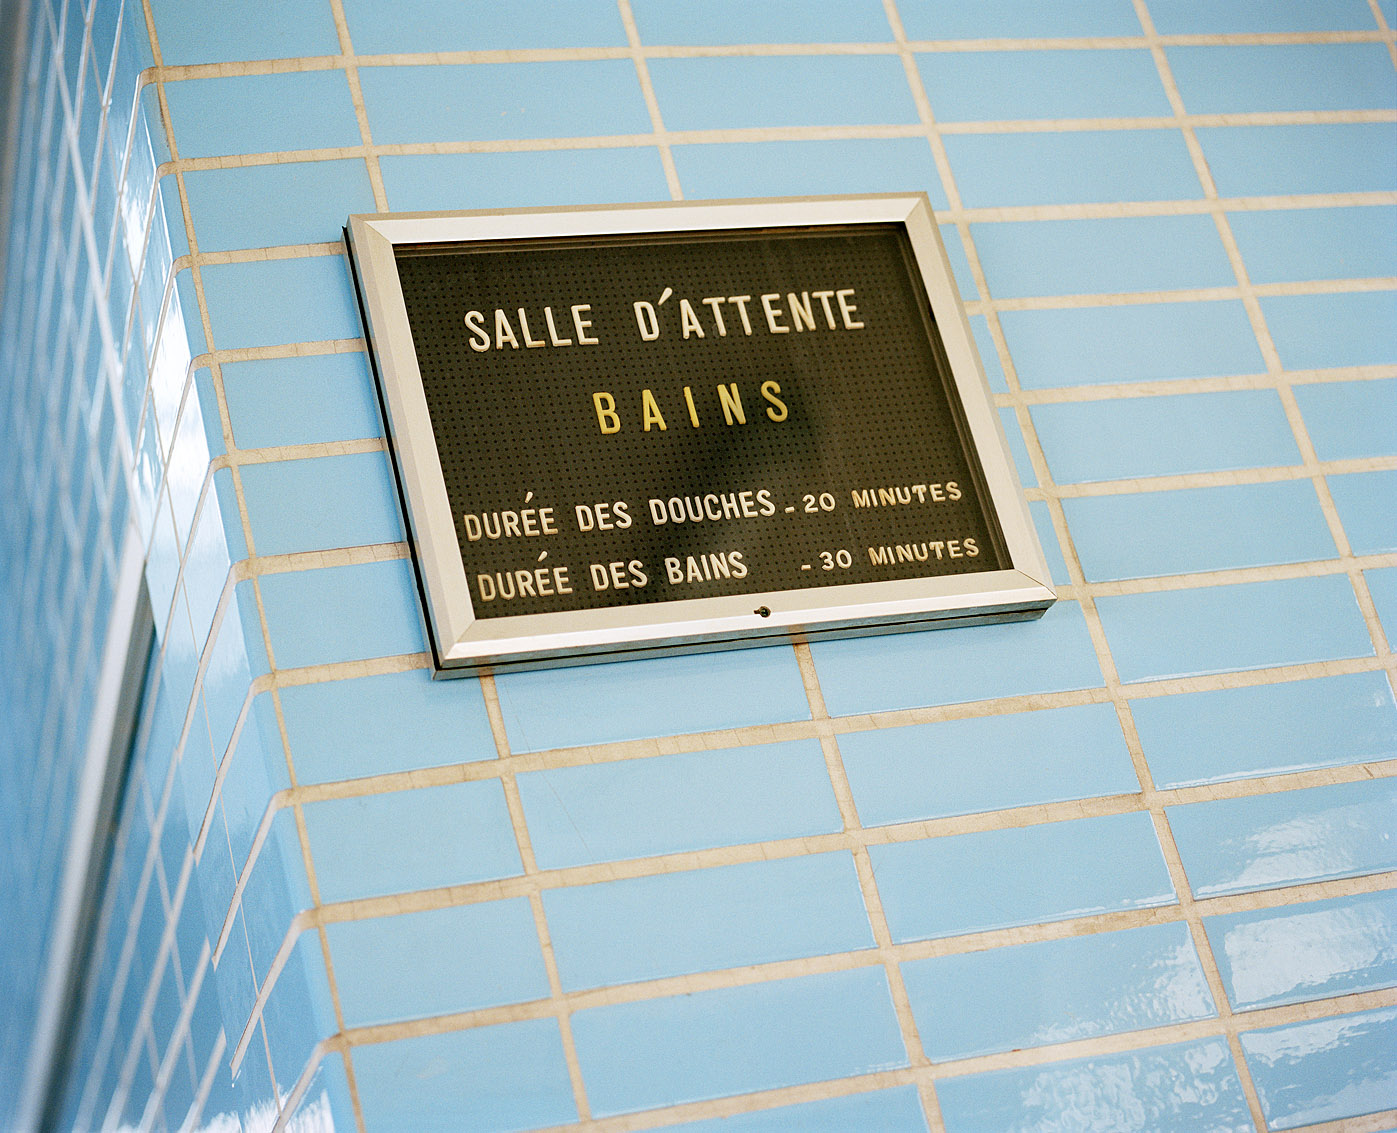 Salle d'attente des bains-douches Wazemmes de Lille.